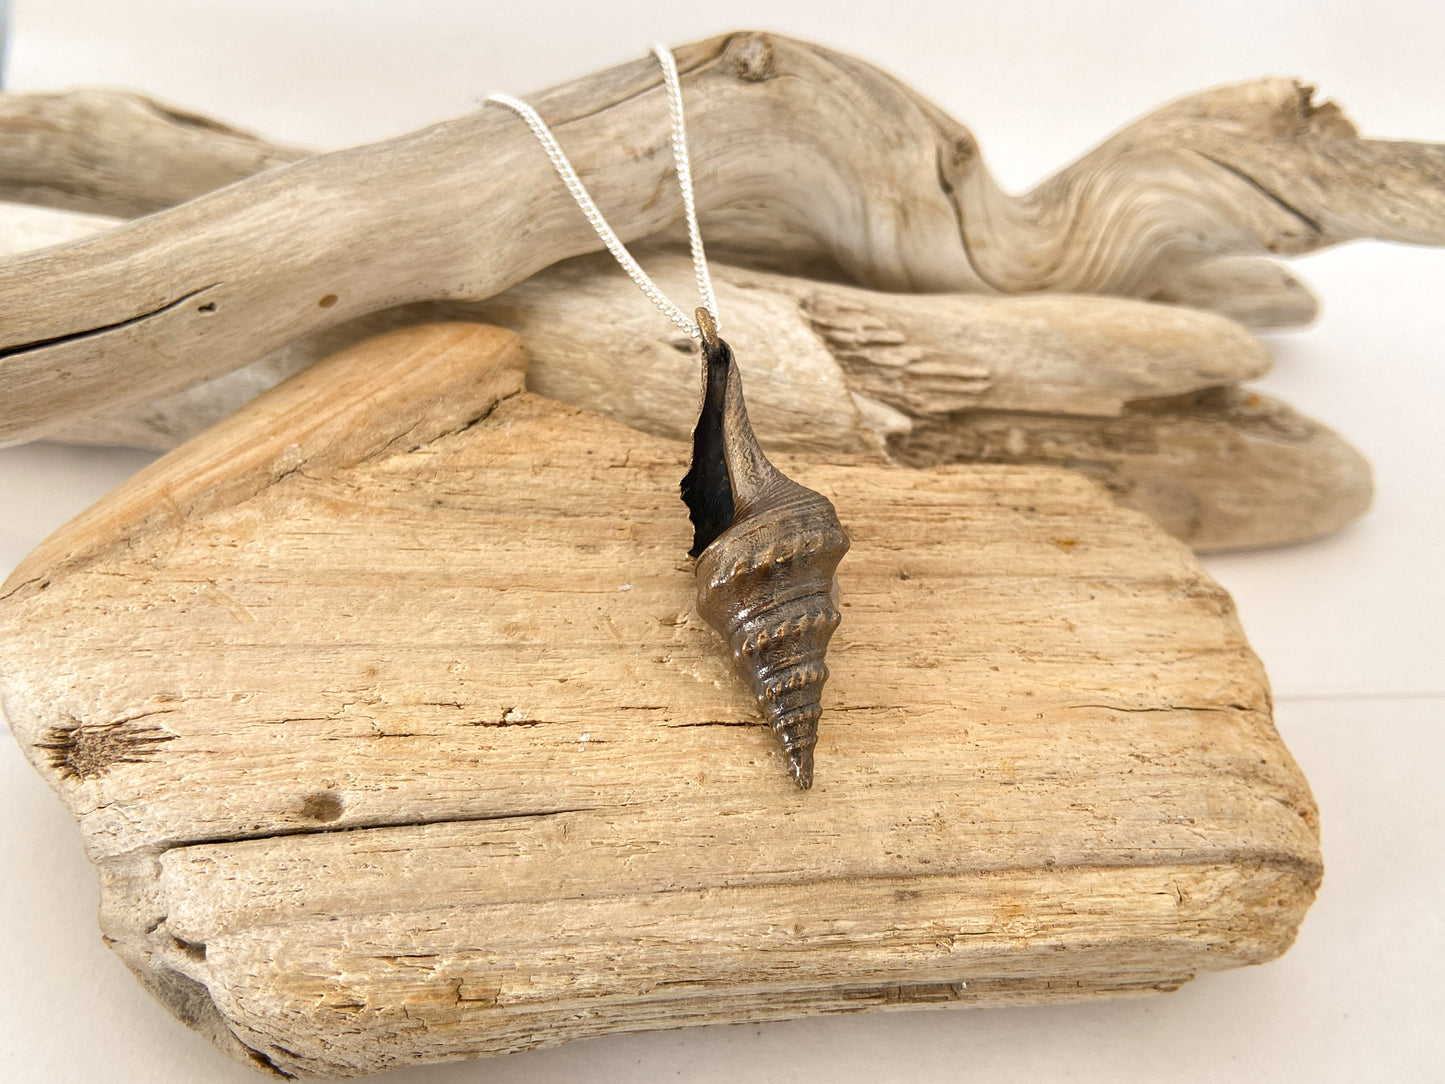 Pendant: Sea snail - knobbly shell